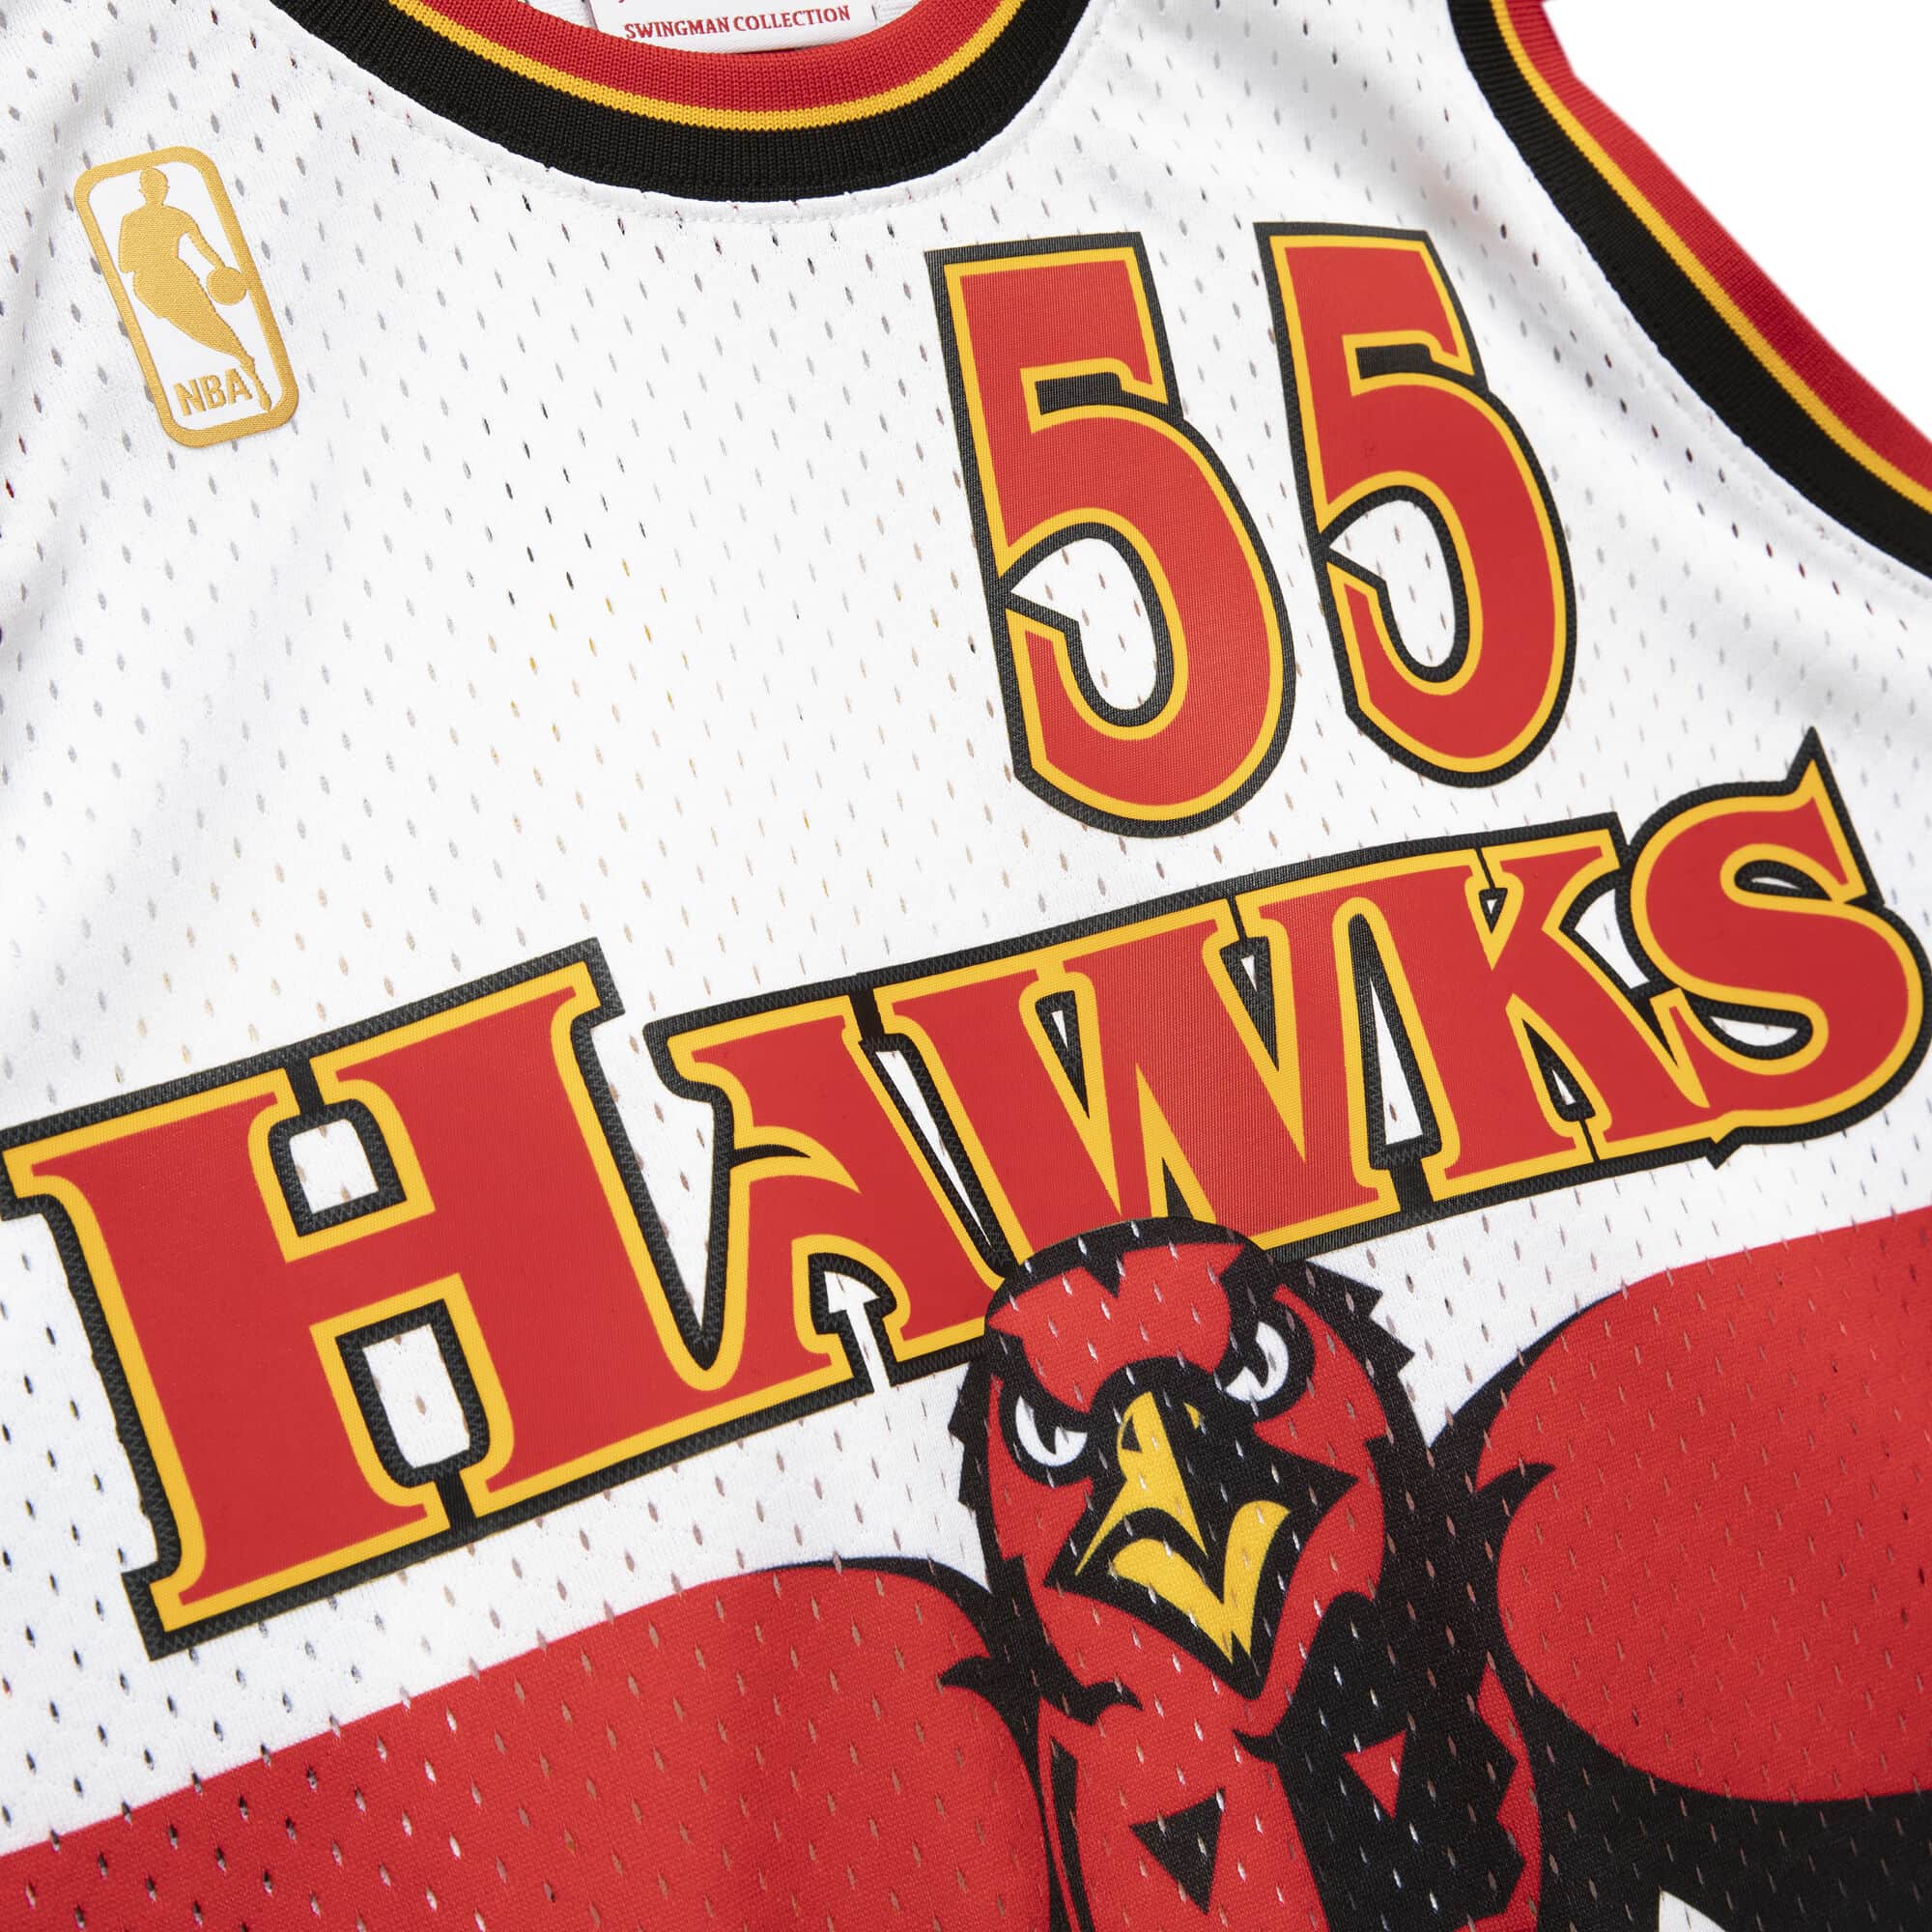 Atlanta Hawks Jersey dikembe mutombo for Sale in Decatur, GA - OfferUp